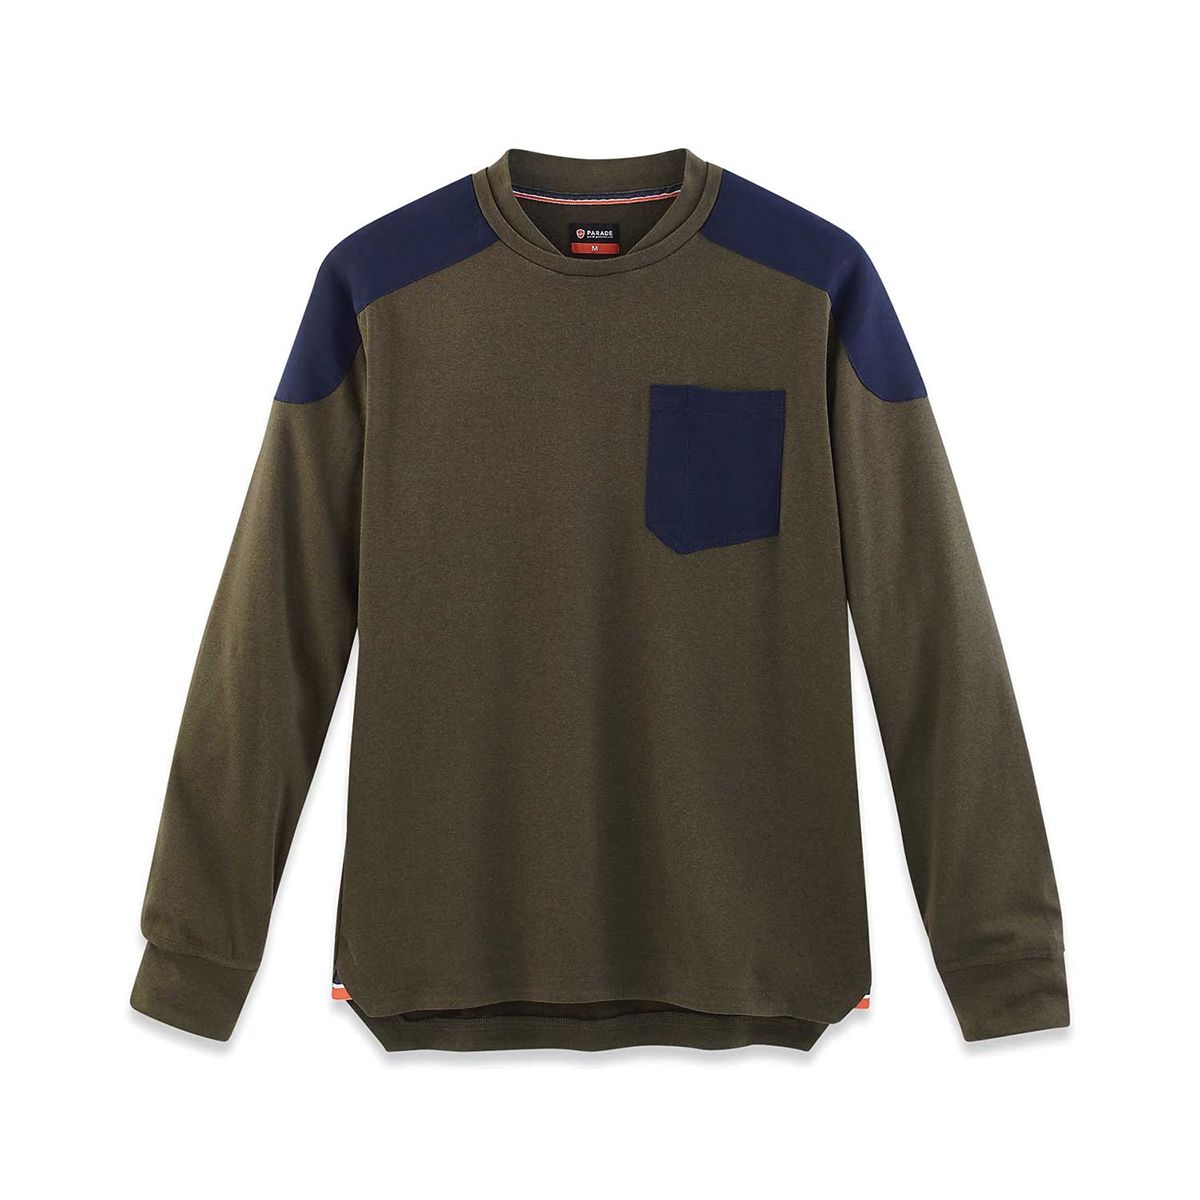 Parade Khaki Polyester Long Sleeve T-Shirt, UK- XXXL, EUR- XXXL